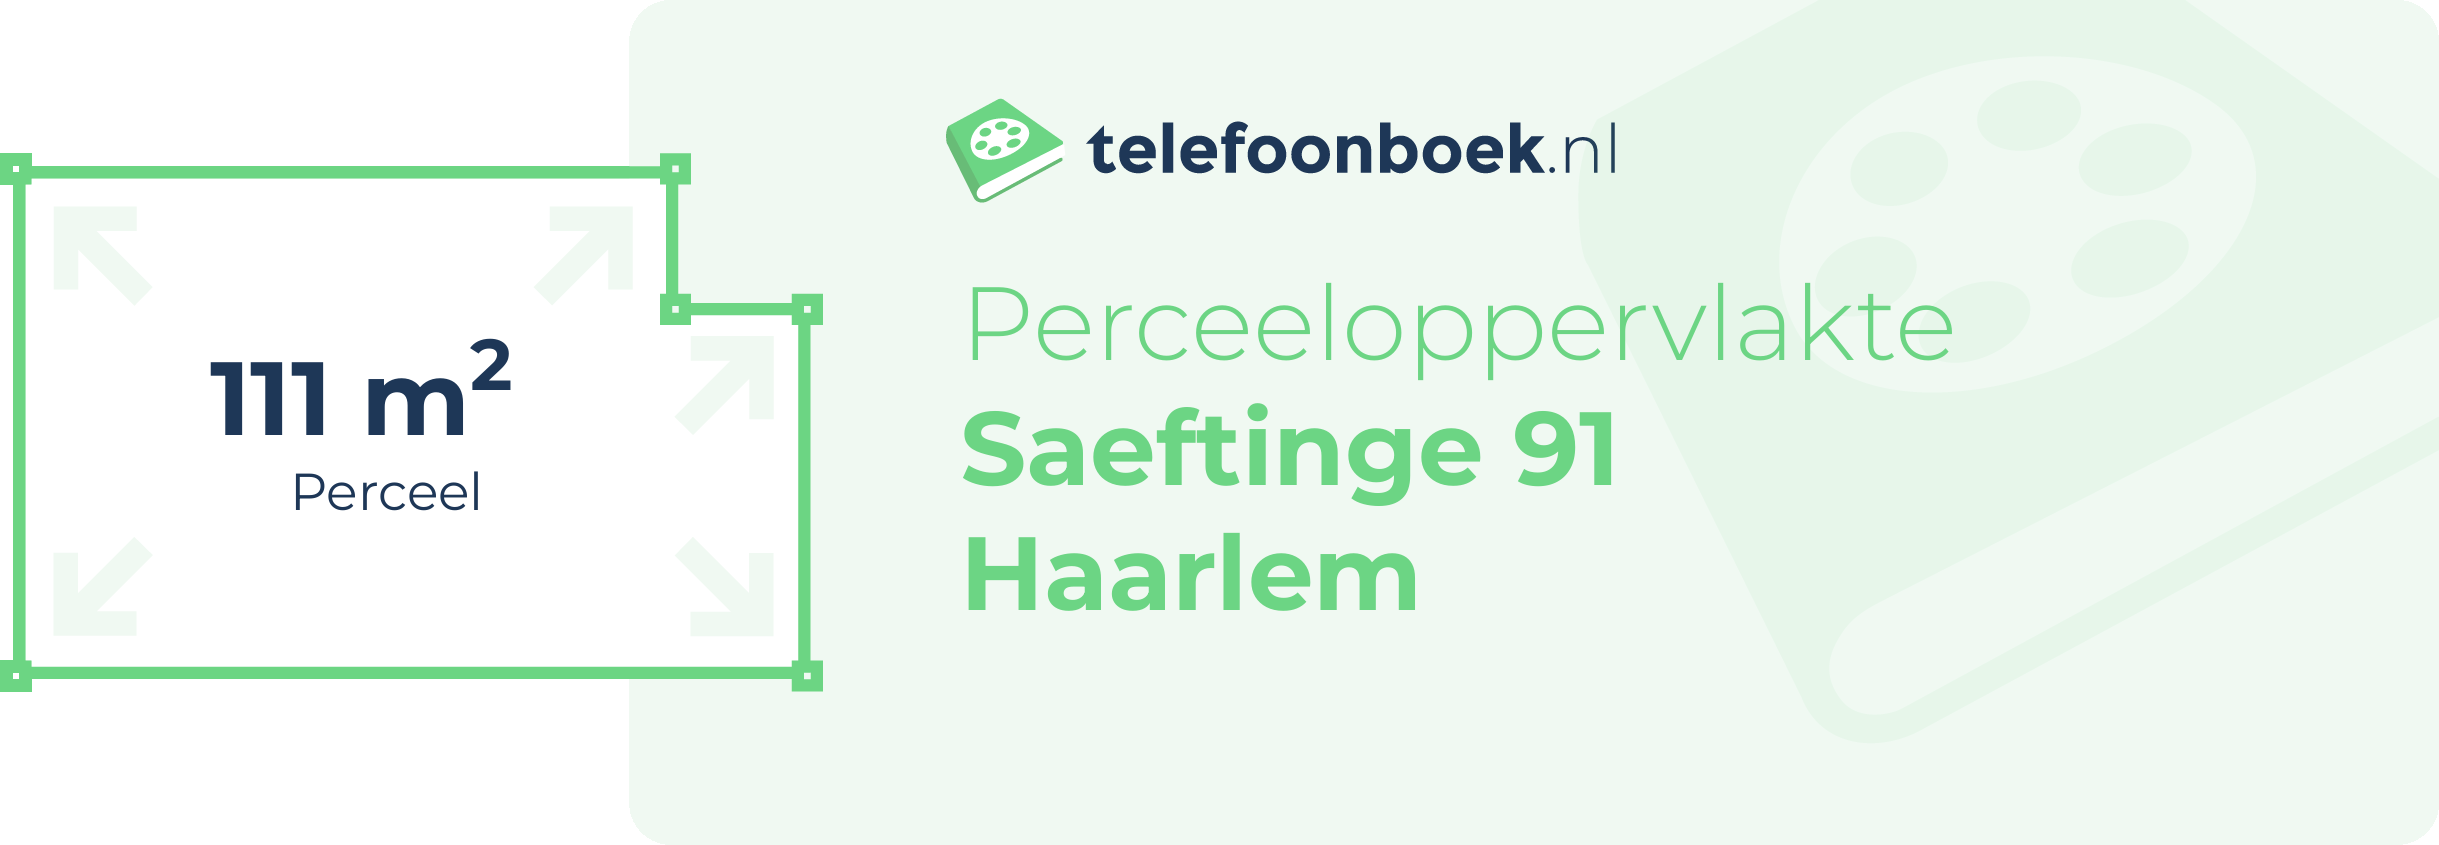 Perceeloppervlakte Saeftinge 91 Haarlem